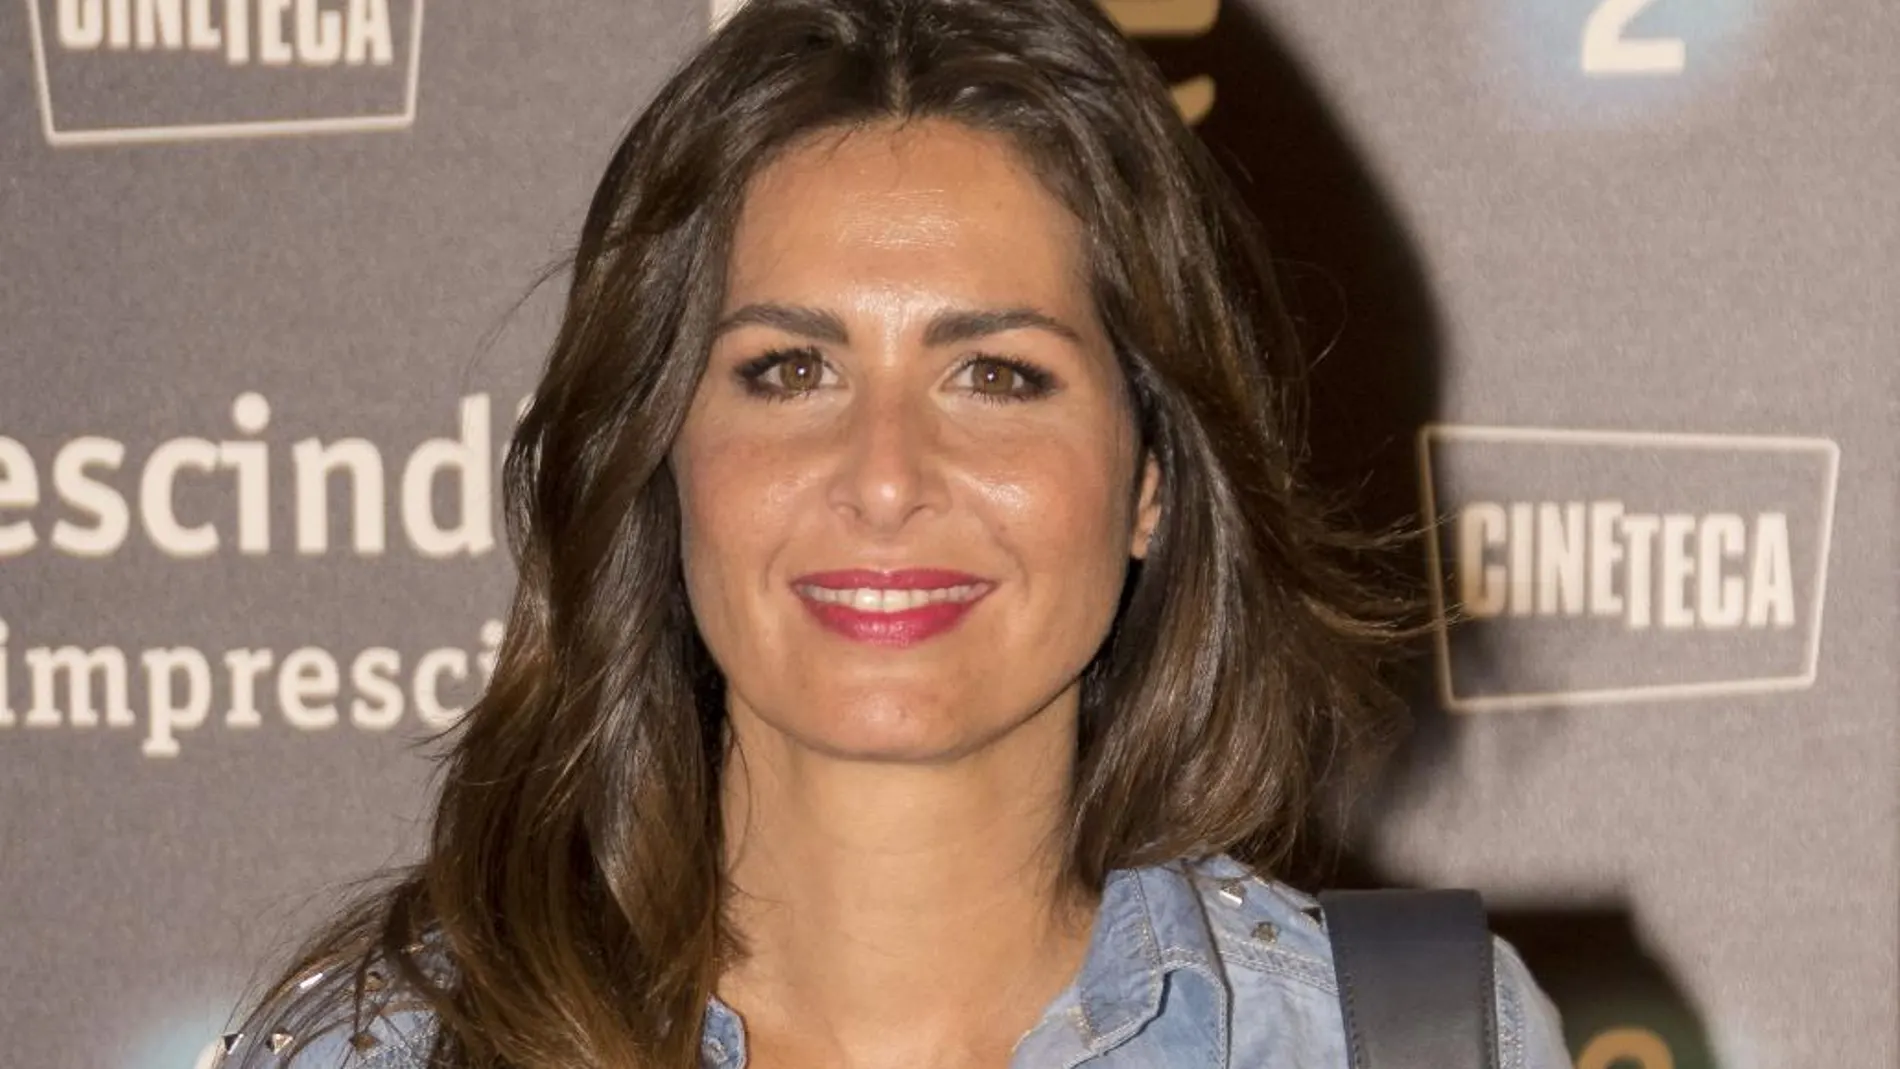 La presentadora Nuria Roca durante la premiere del documental "historias para recordar"en Madrid.